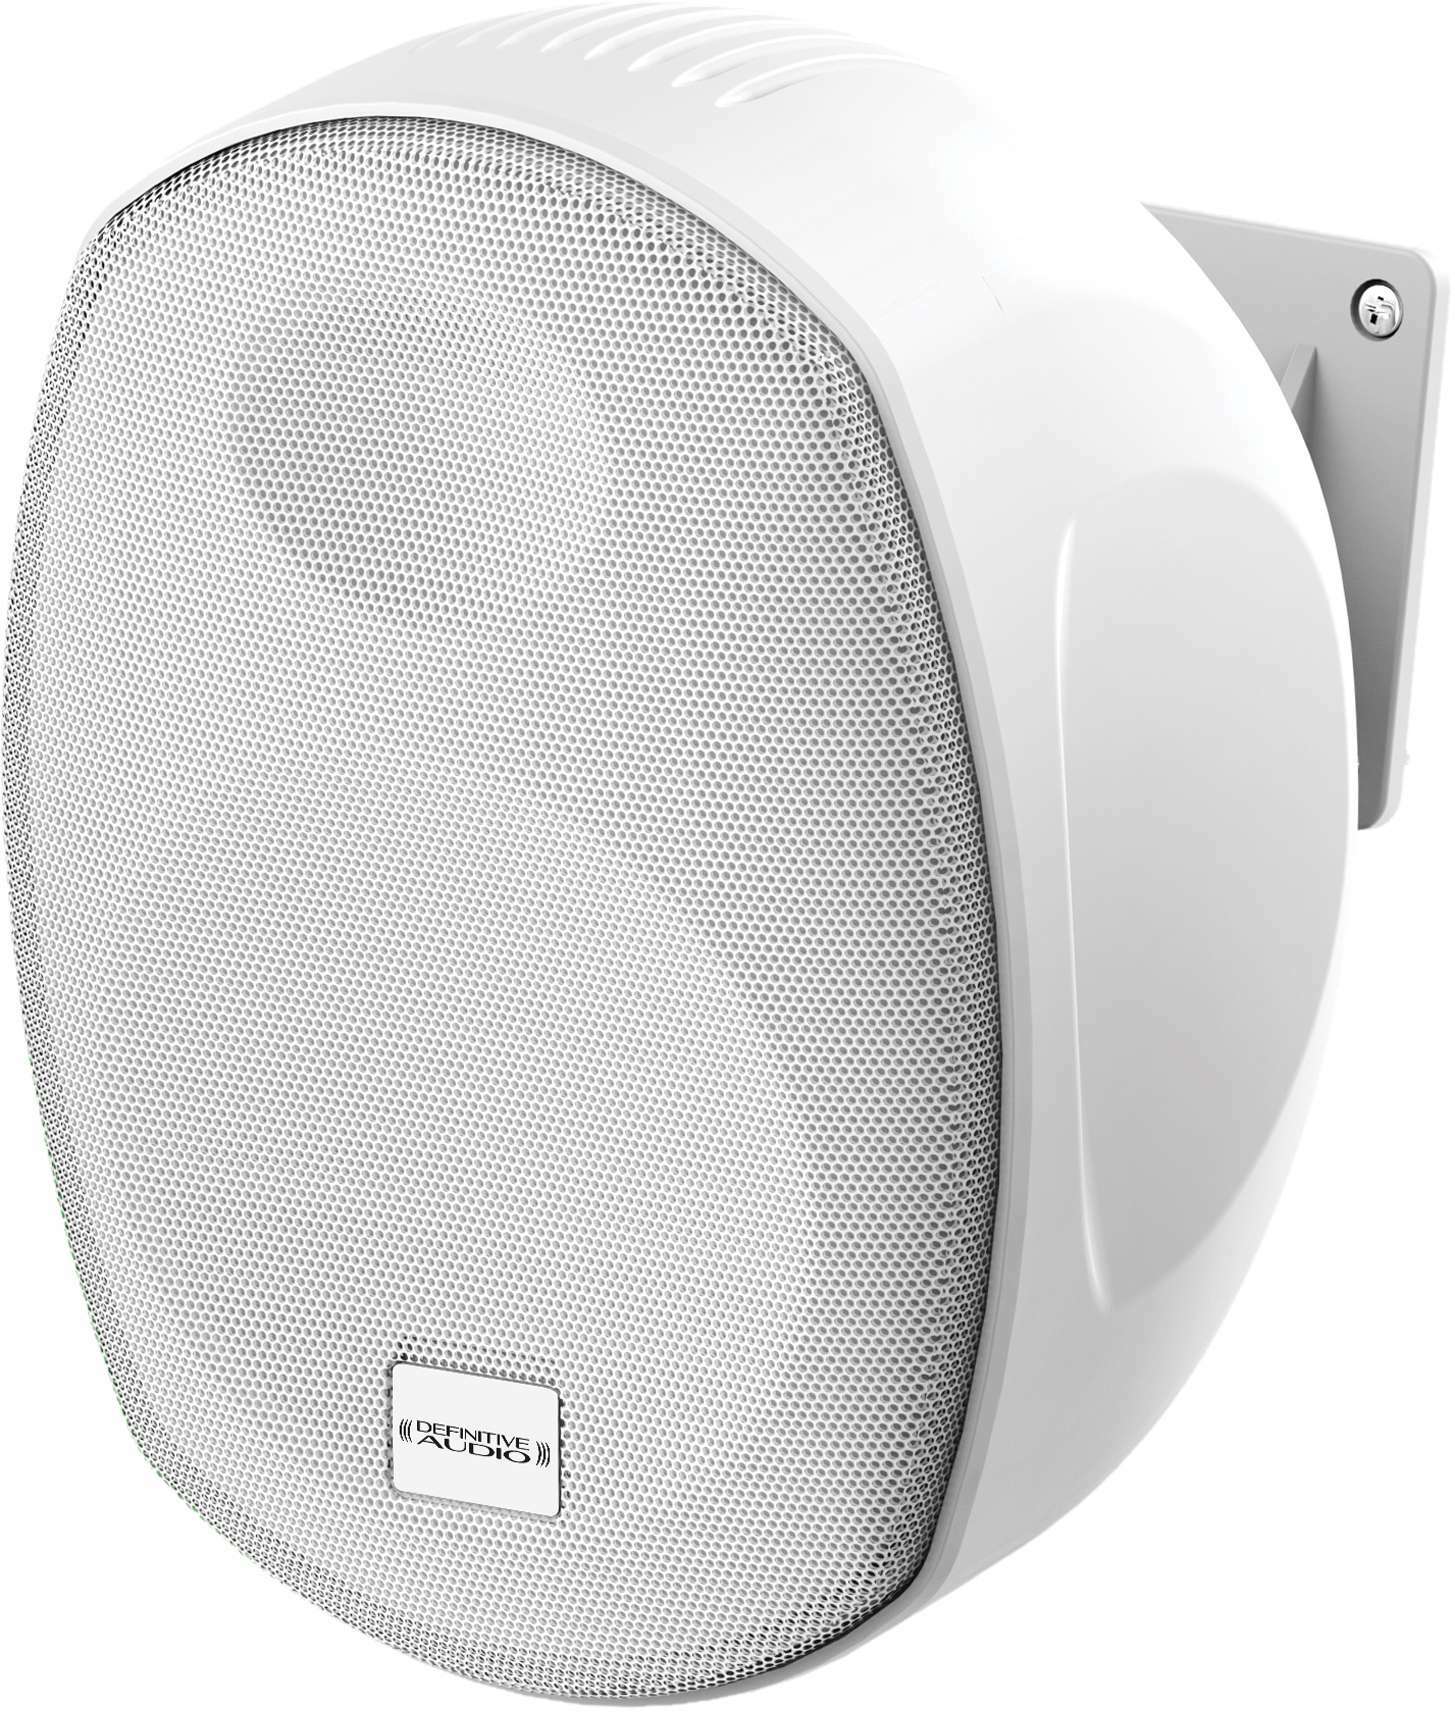 Definitive Audio Klipper 8t Wh (unitÉ) - Installation speakers - Main picture